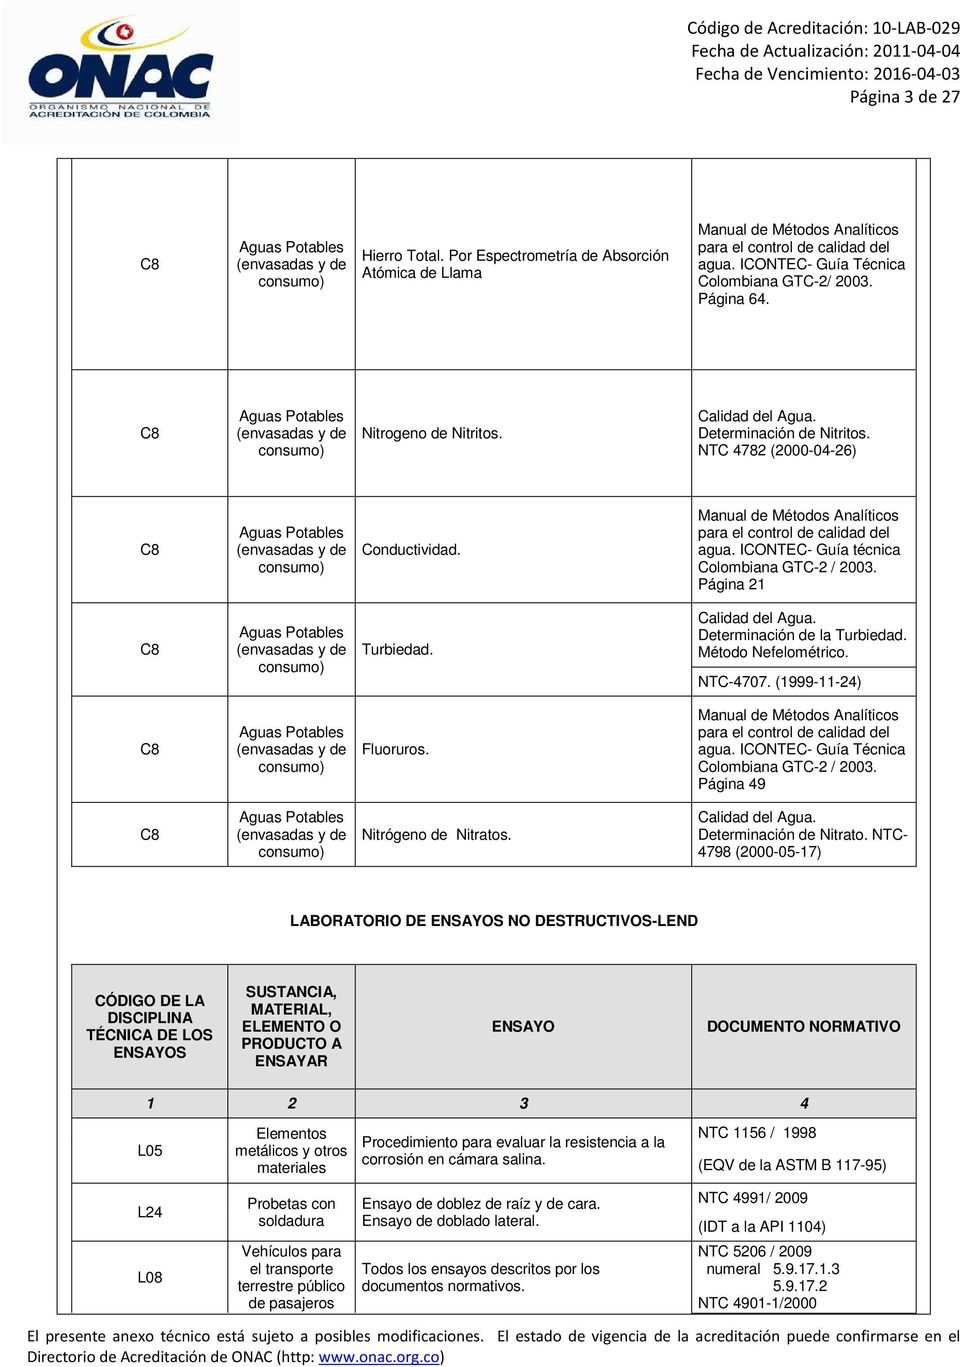 NTC 4782 (2000-04-26) C8 Aguas Potables (envasadas y de consumo) Conductividad. Manual de Métodos Analíticos para el control de calidad del agua. ICONTEC- Guía técnica Colombiana GTC-2 / 2003.